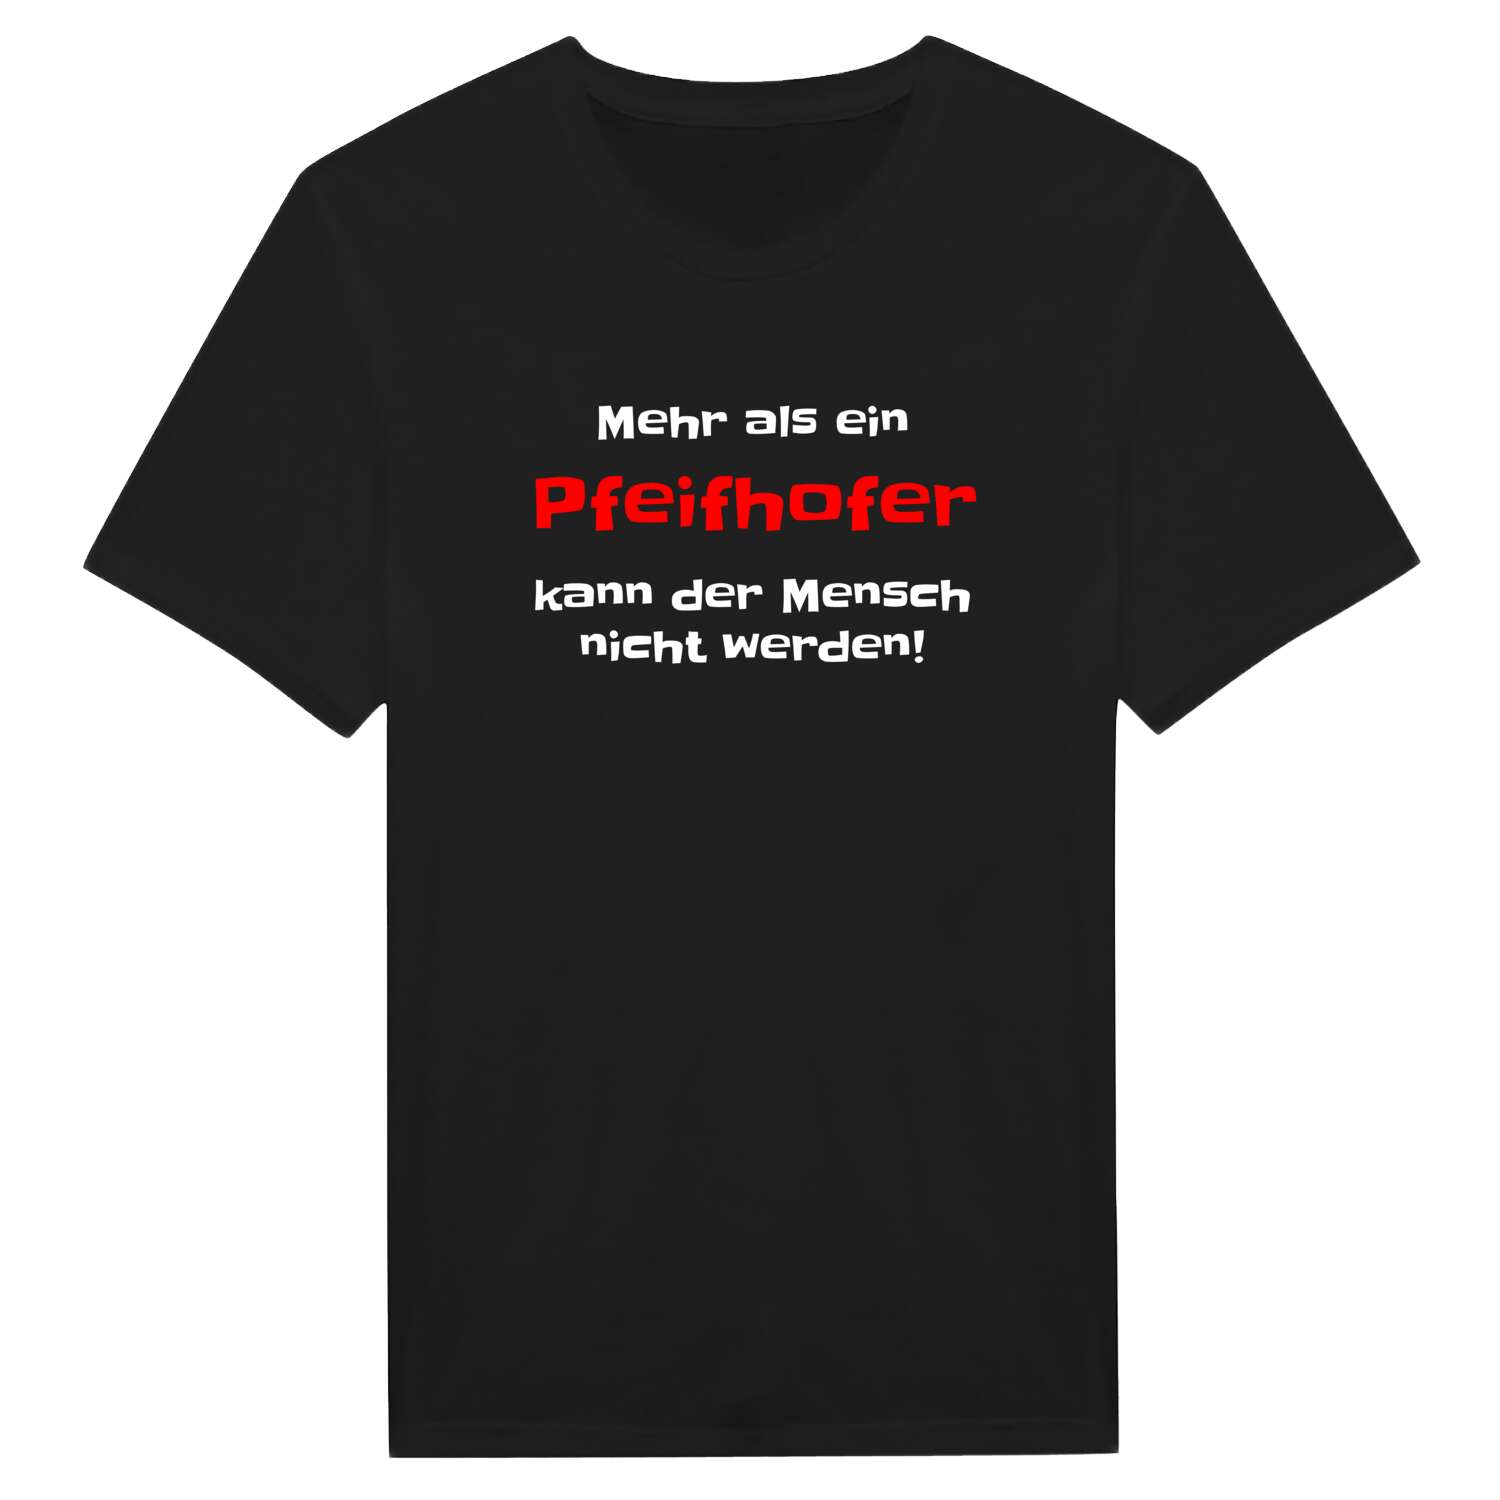 Pfeifhof T-Shirt »Mehr als ein«